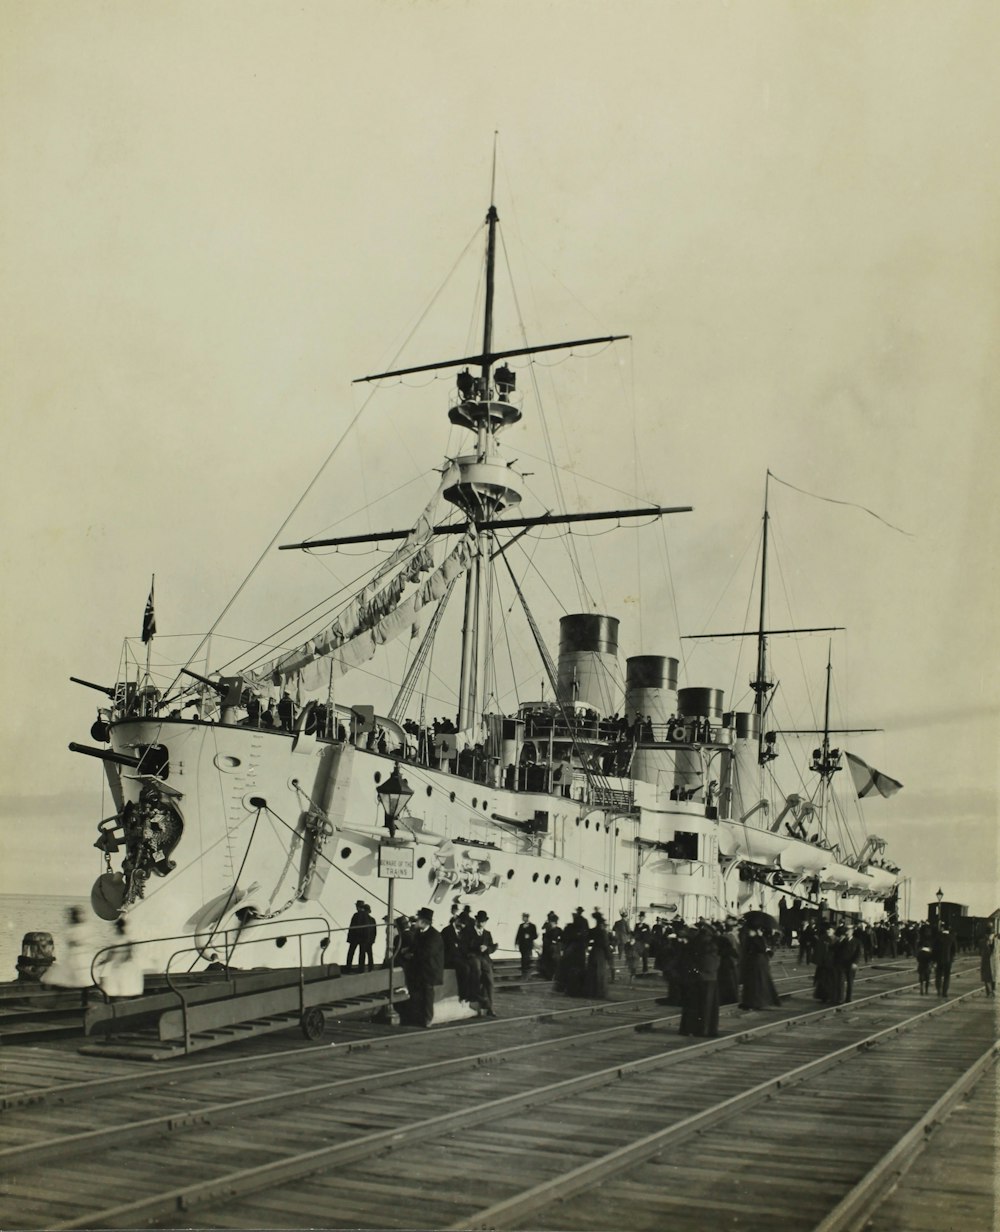 foto in scala di grigi della nave sul molo